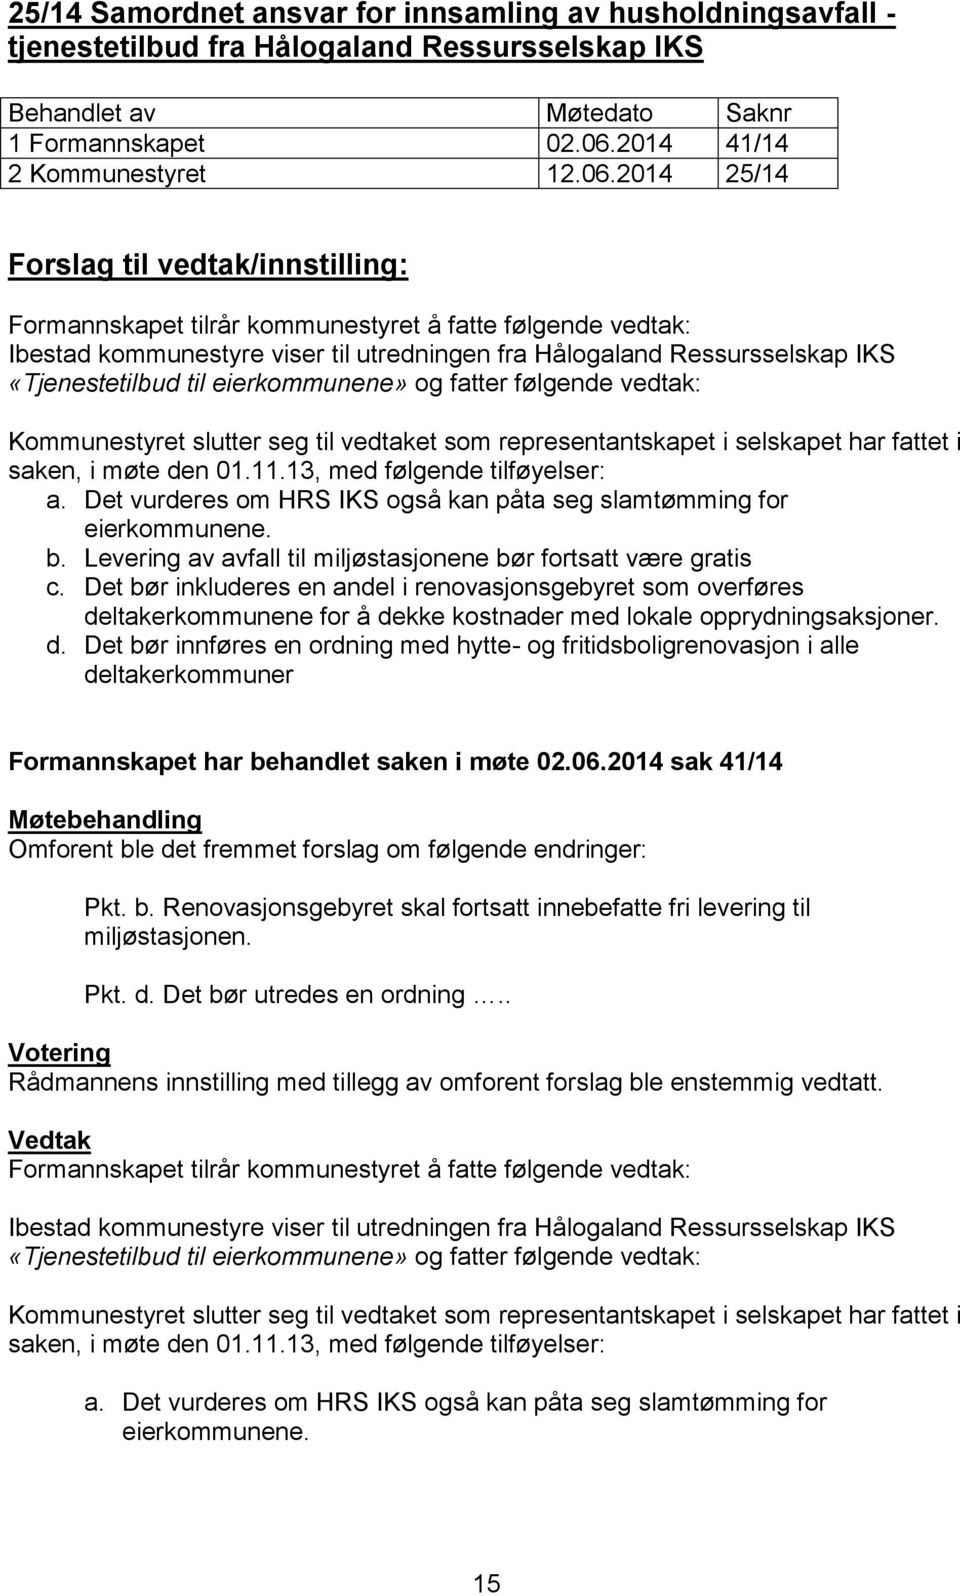 2014 25/14 Forslag til vedtak/innstilling: Ibestad kommunestyre viser til utredningen fra Hålogaland Ressursselskap IKS «Tjenestetilbud til eierkommunene» og fatter følgende vedtak: Kommunestyret